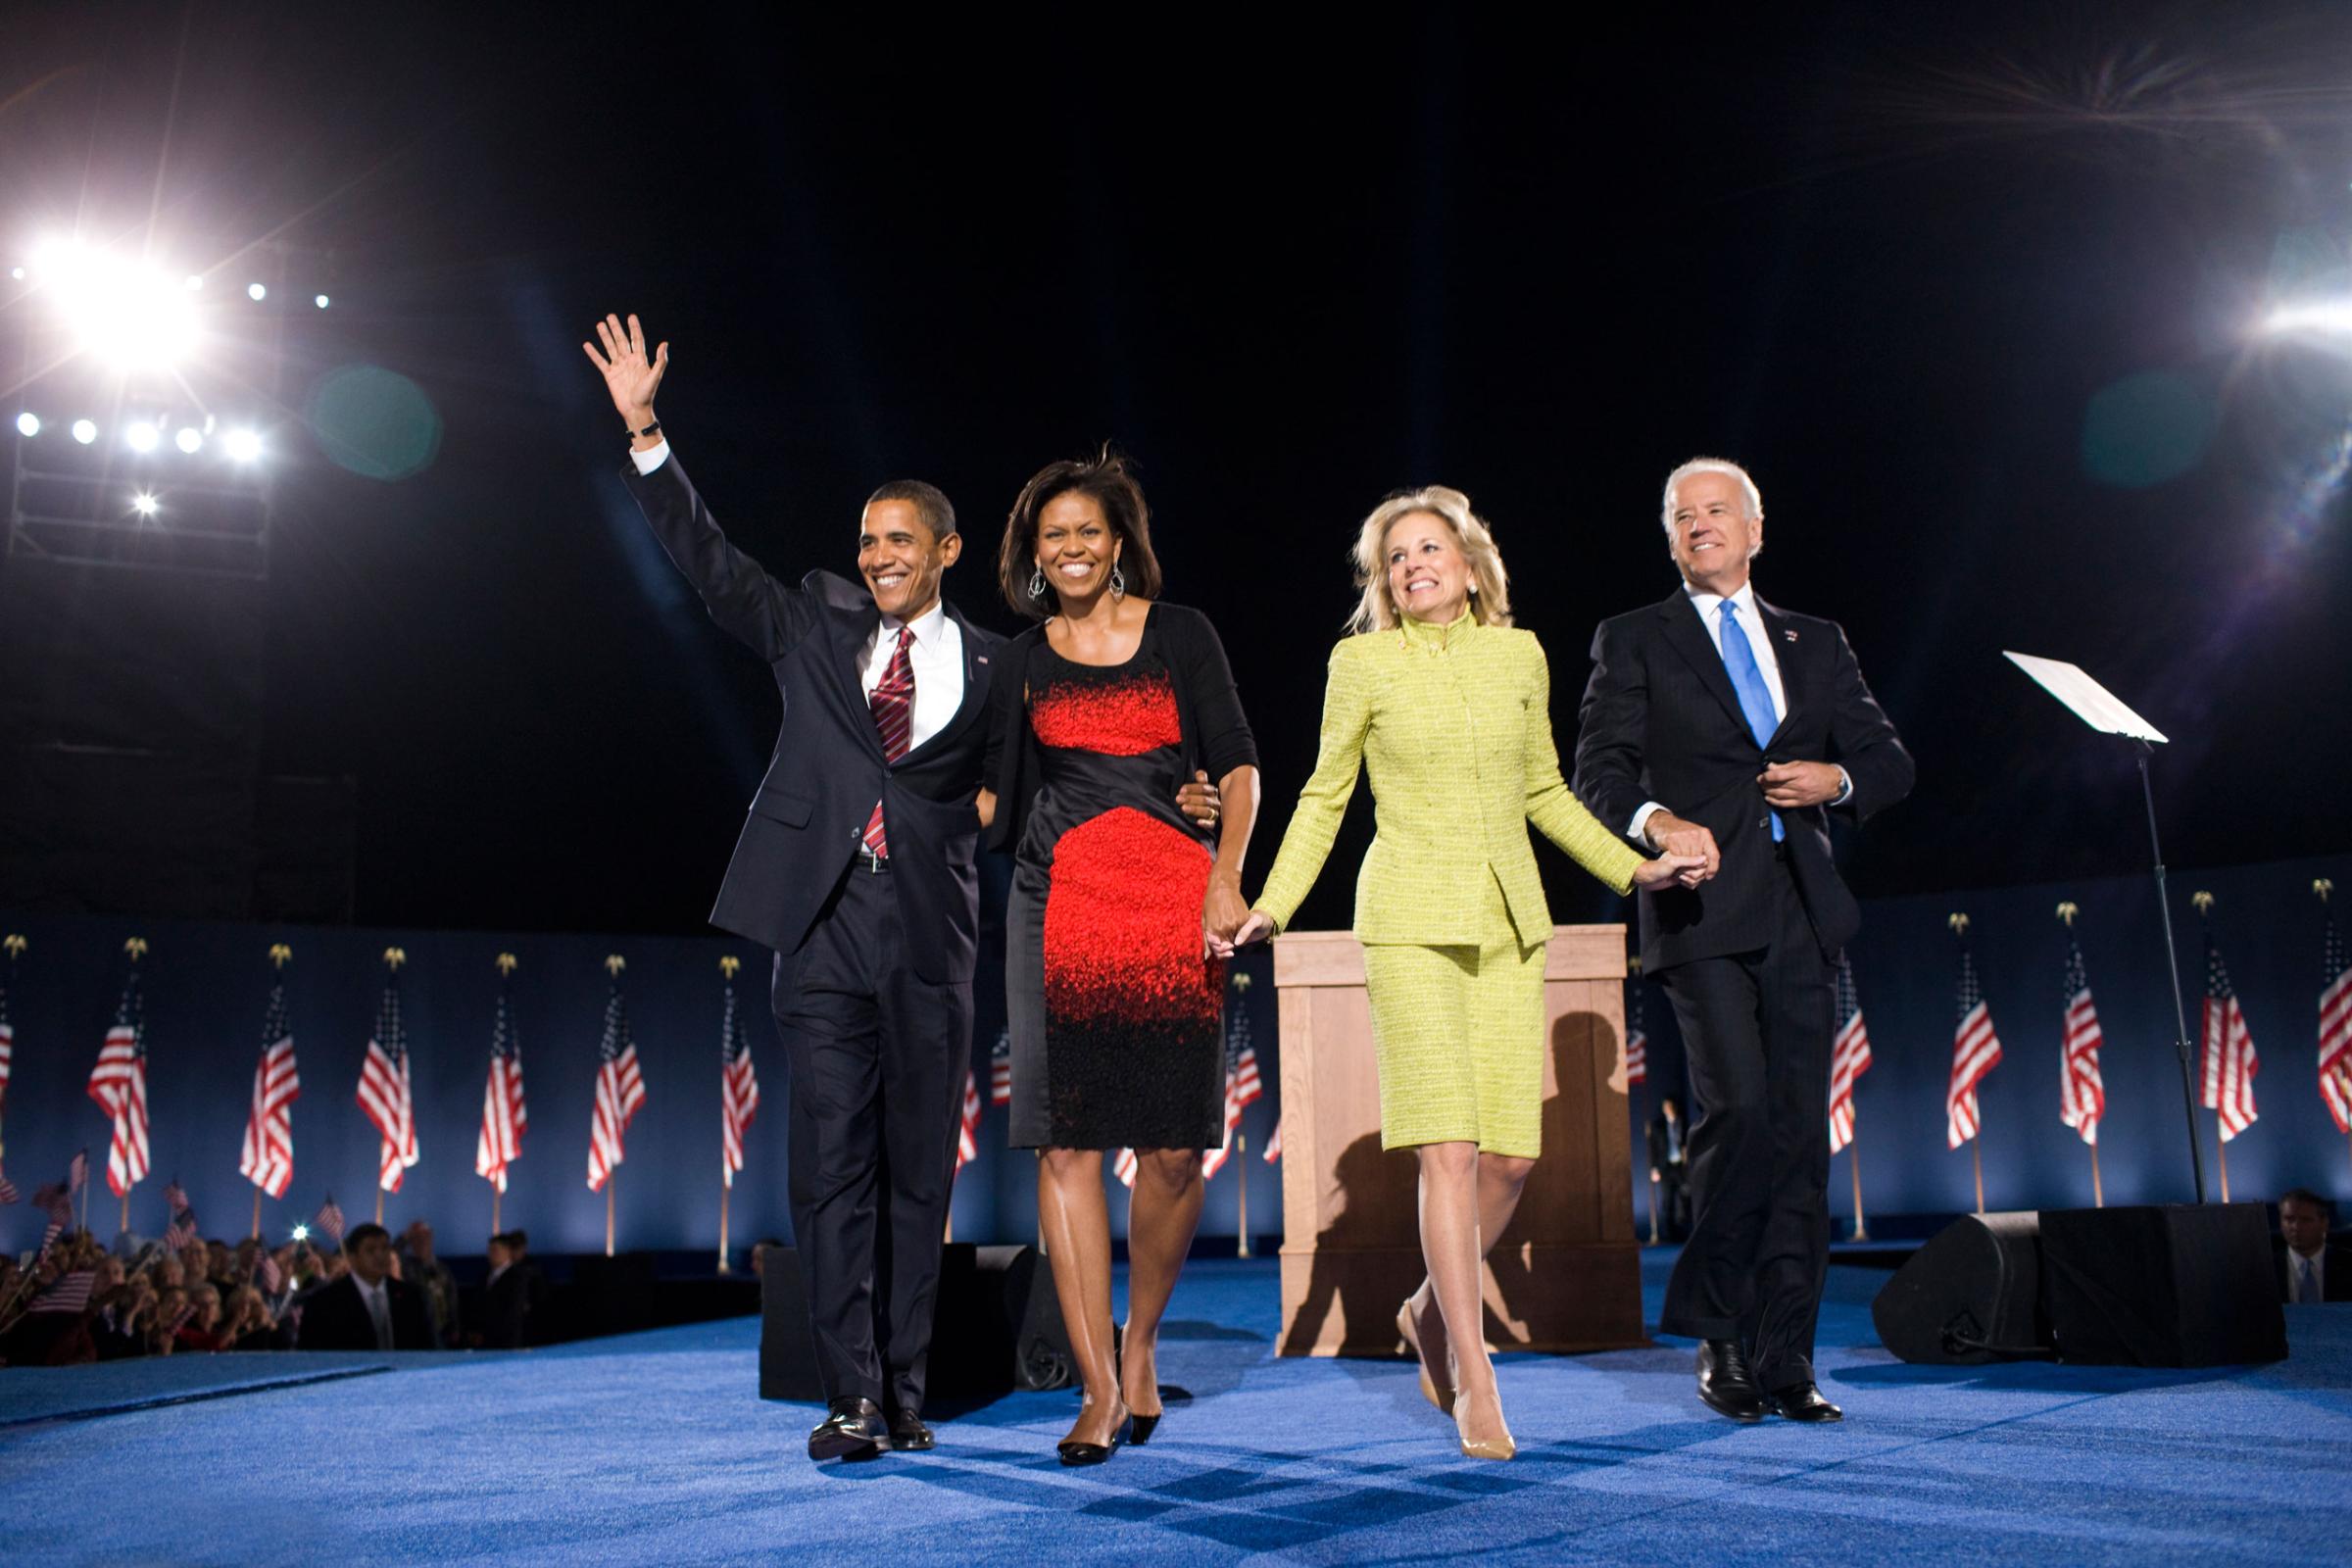 USA - 2008 Presidential Election - Barack Obama Elected Prsident